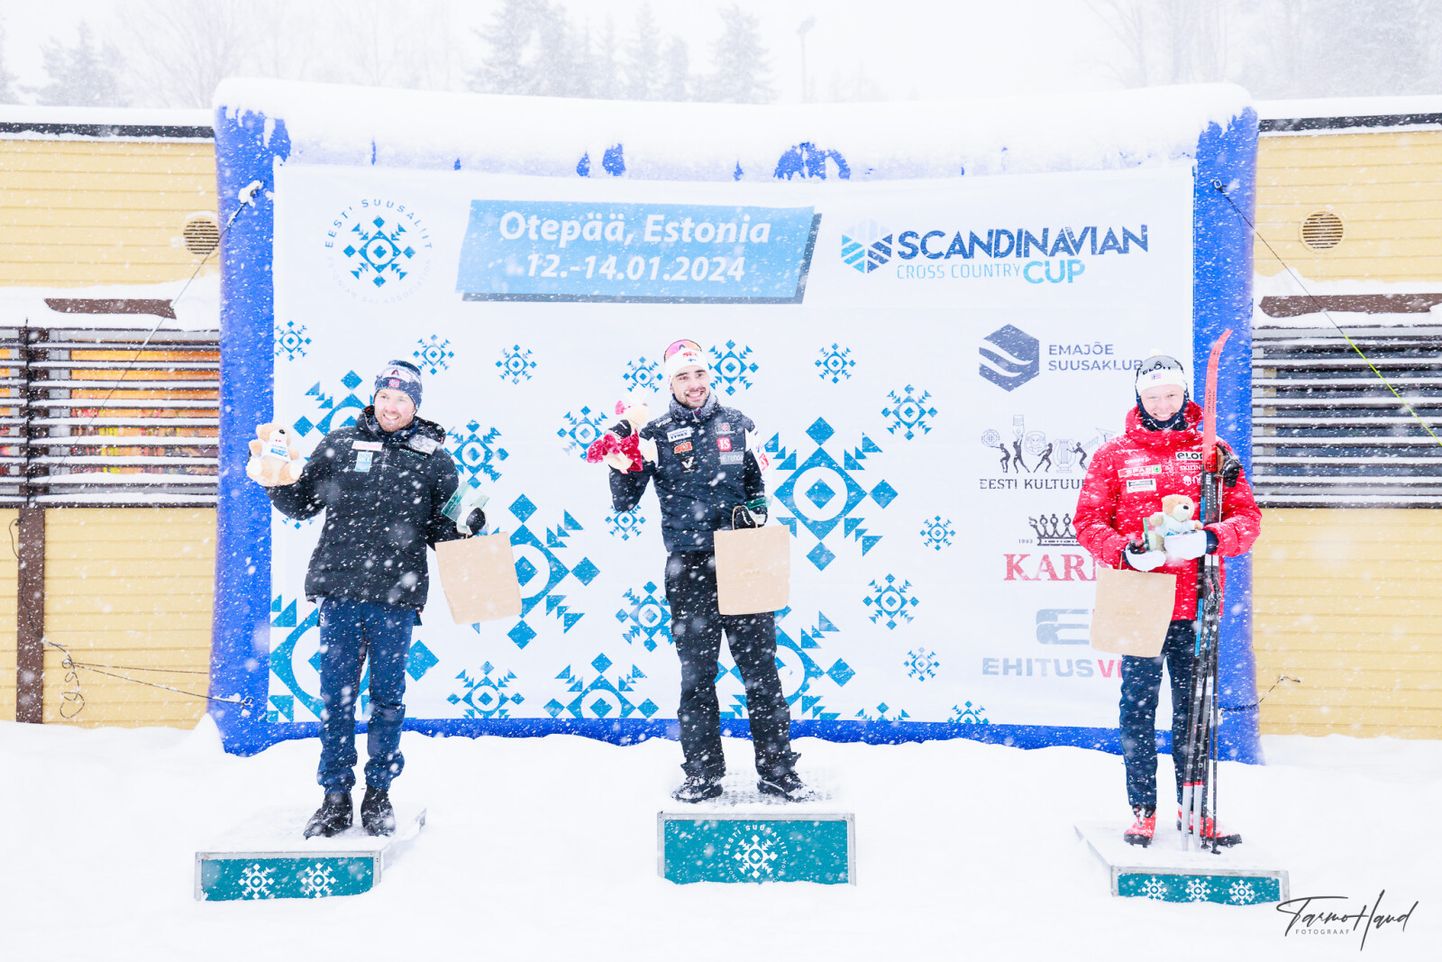 Meeste seas võidutses Soomest pärit Ristomatti Hakola, teise koha saavutas Emil Iversen ja kolmandana finišeerus Mats Opsal.